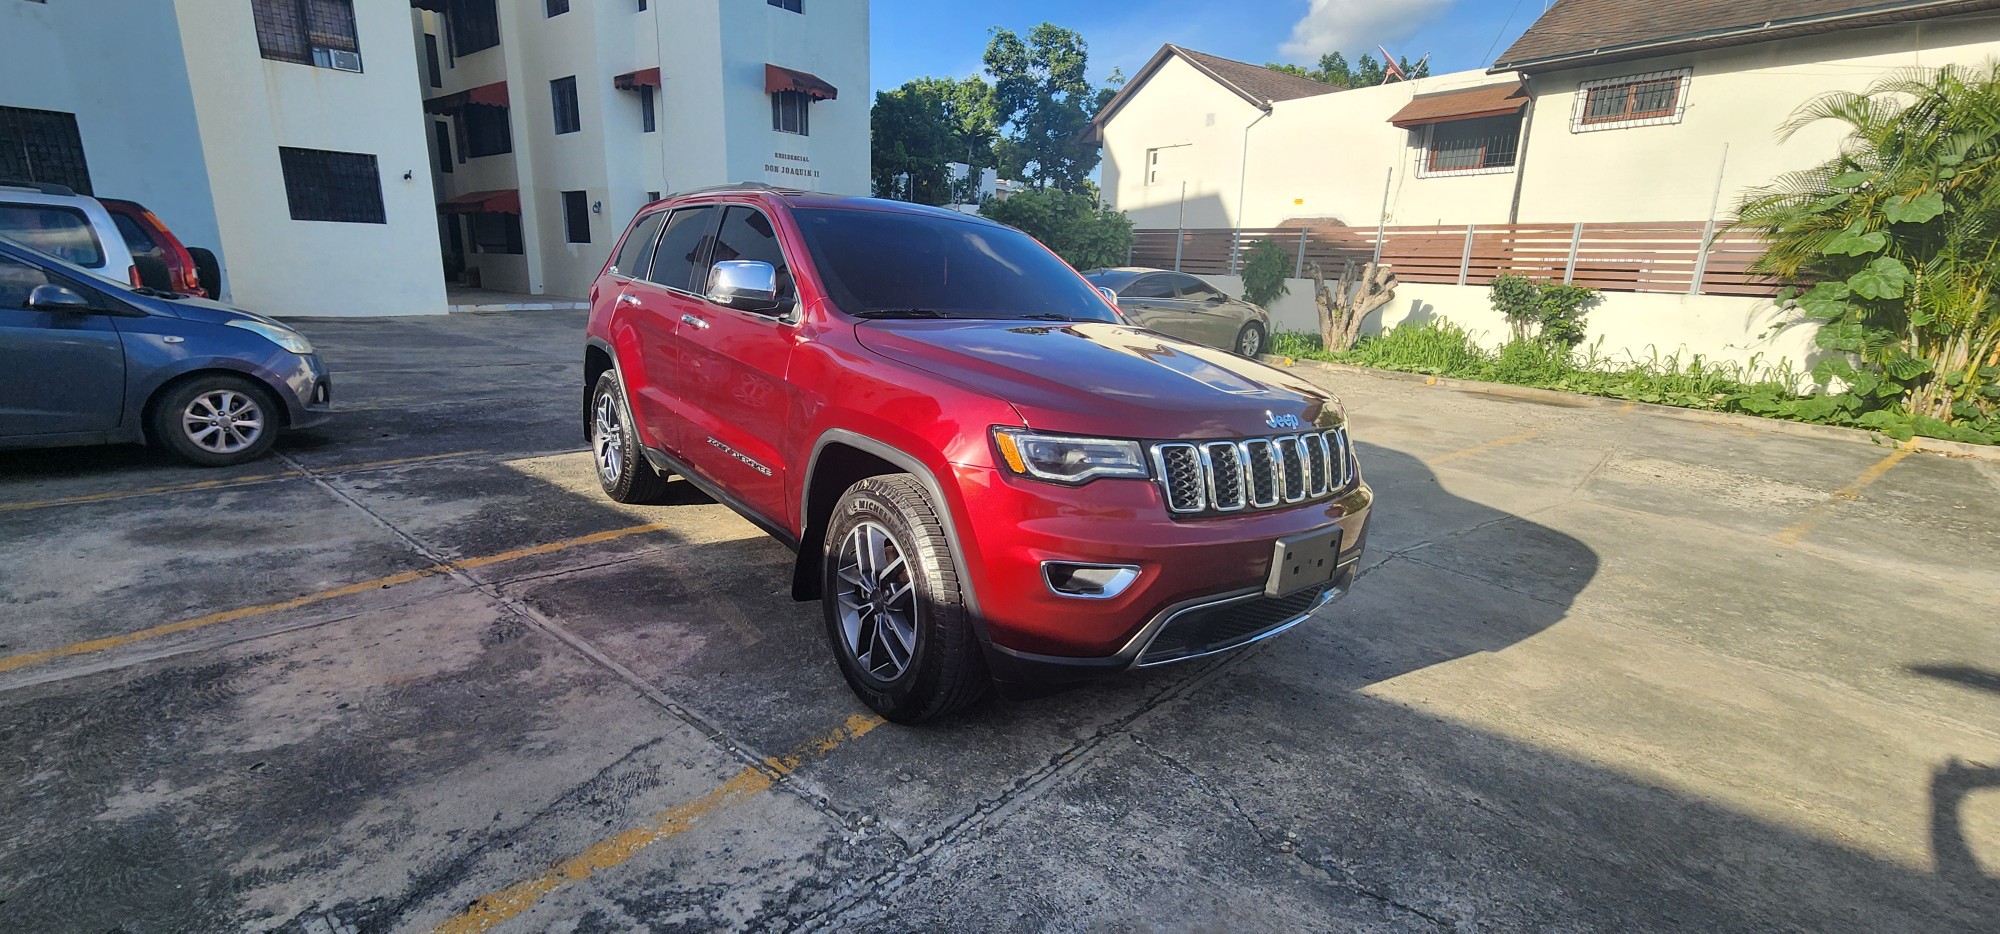 jeepetas y camionetas - Jeep grand cherokee limited 4x4 2019 7